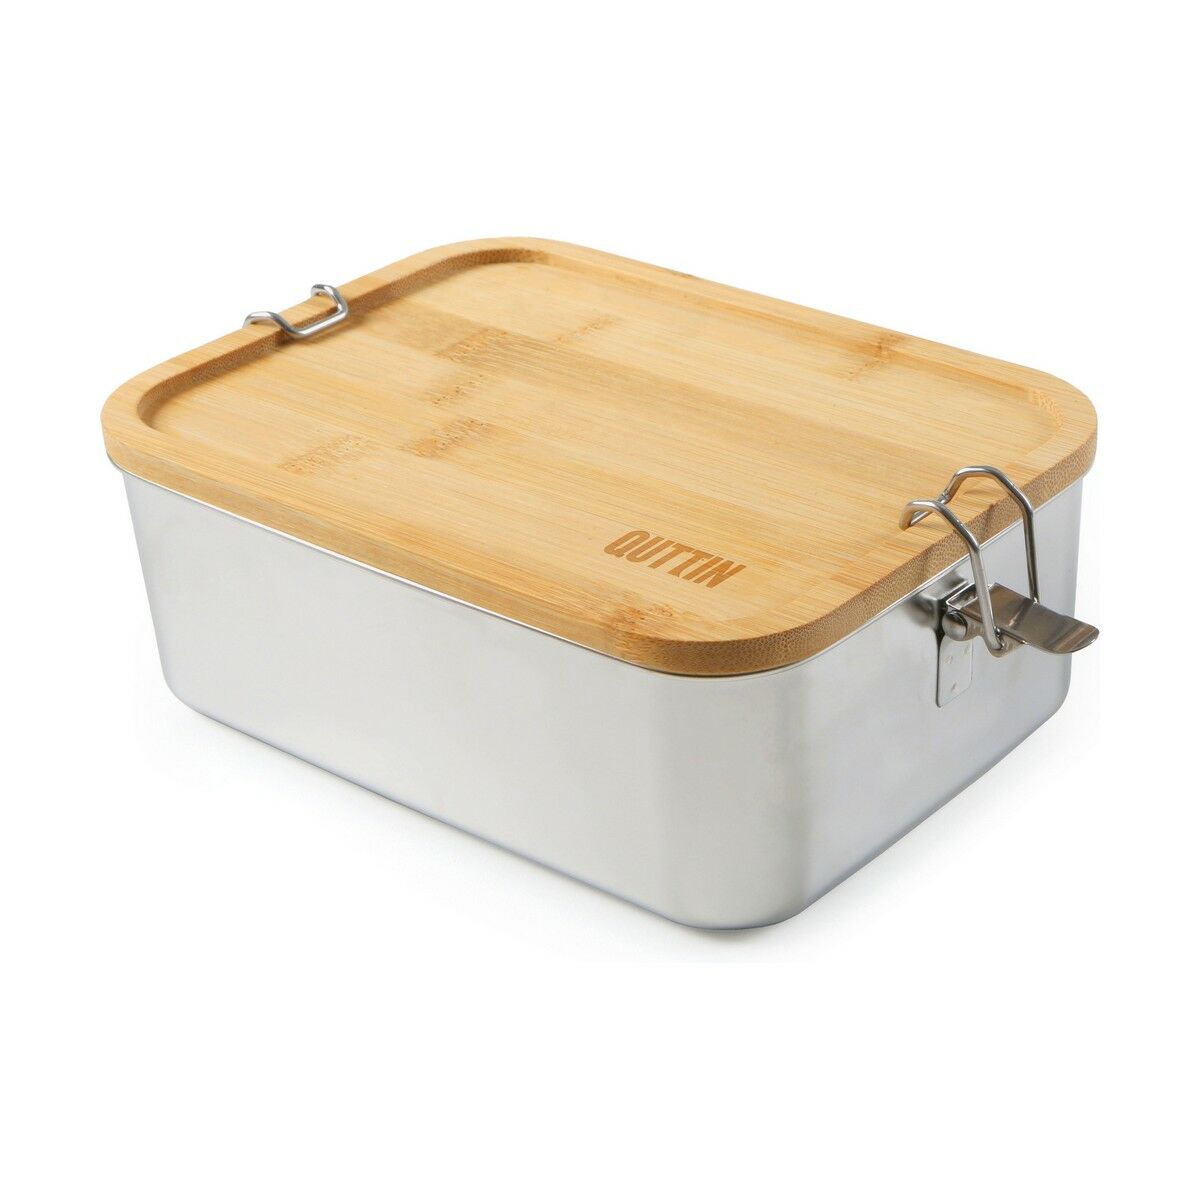 Lunchbox Quttin rechteckig (20 x 15,9 x 7,5 cm) (1,5 L)